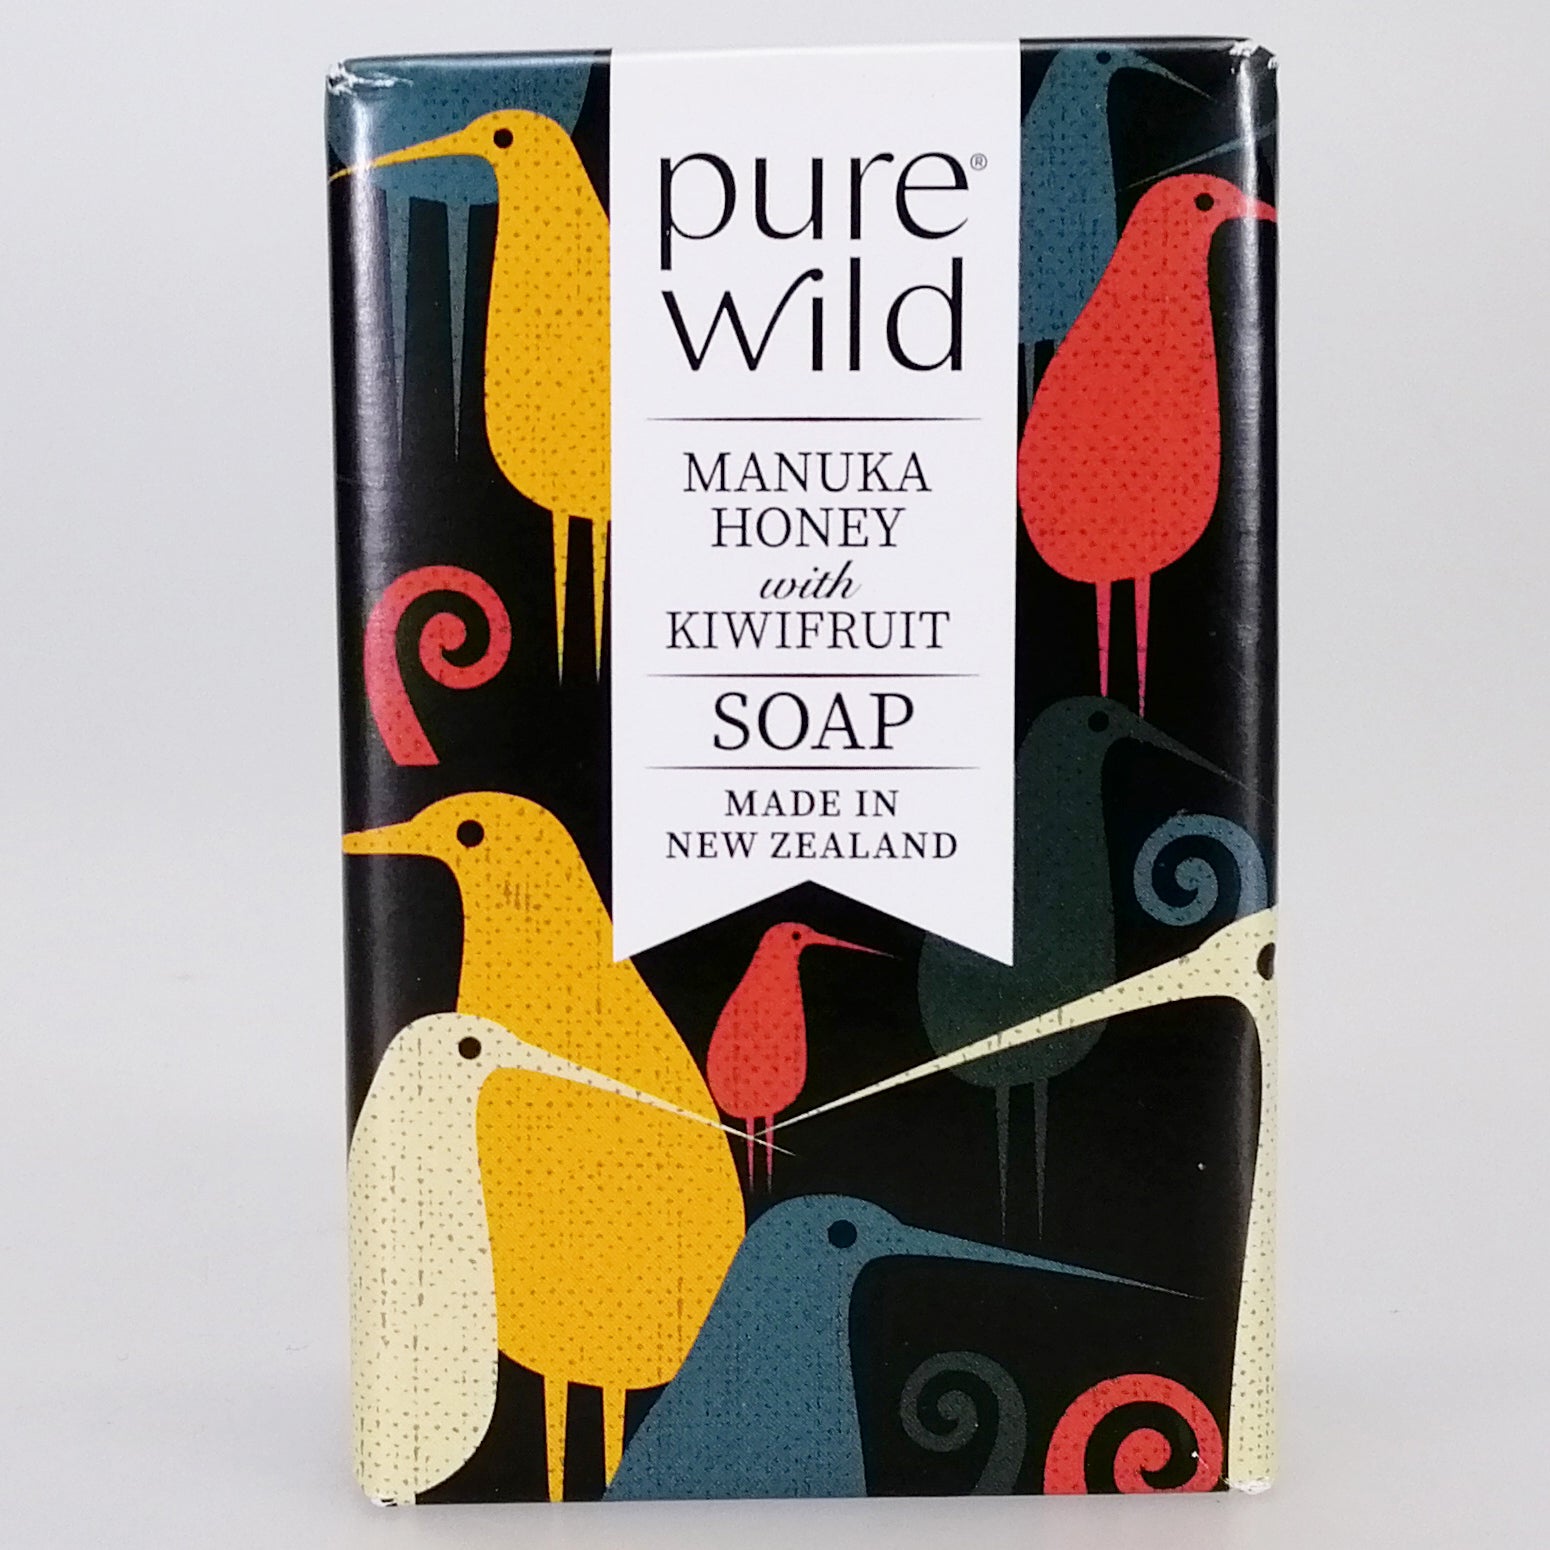 Purewild Manuka Honey & Kiwifruit Soap - Kiwis